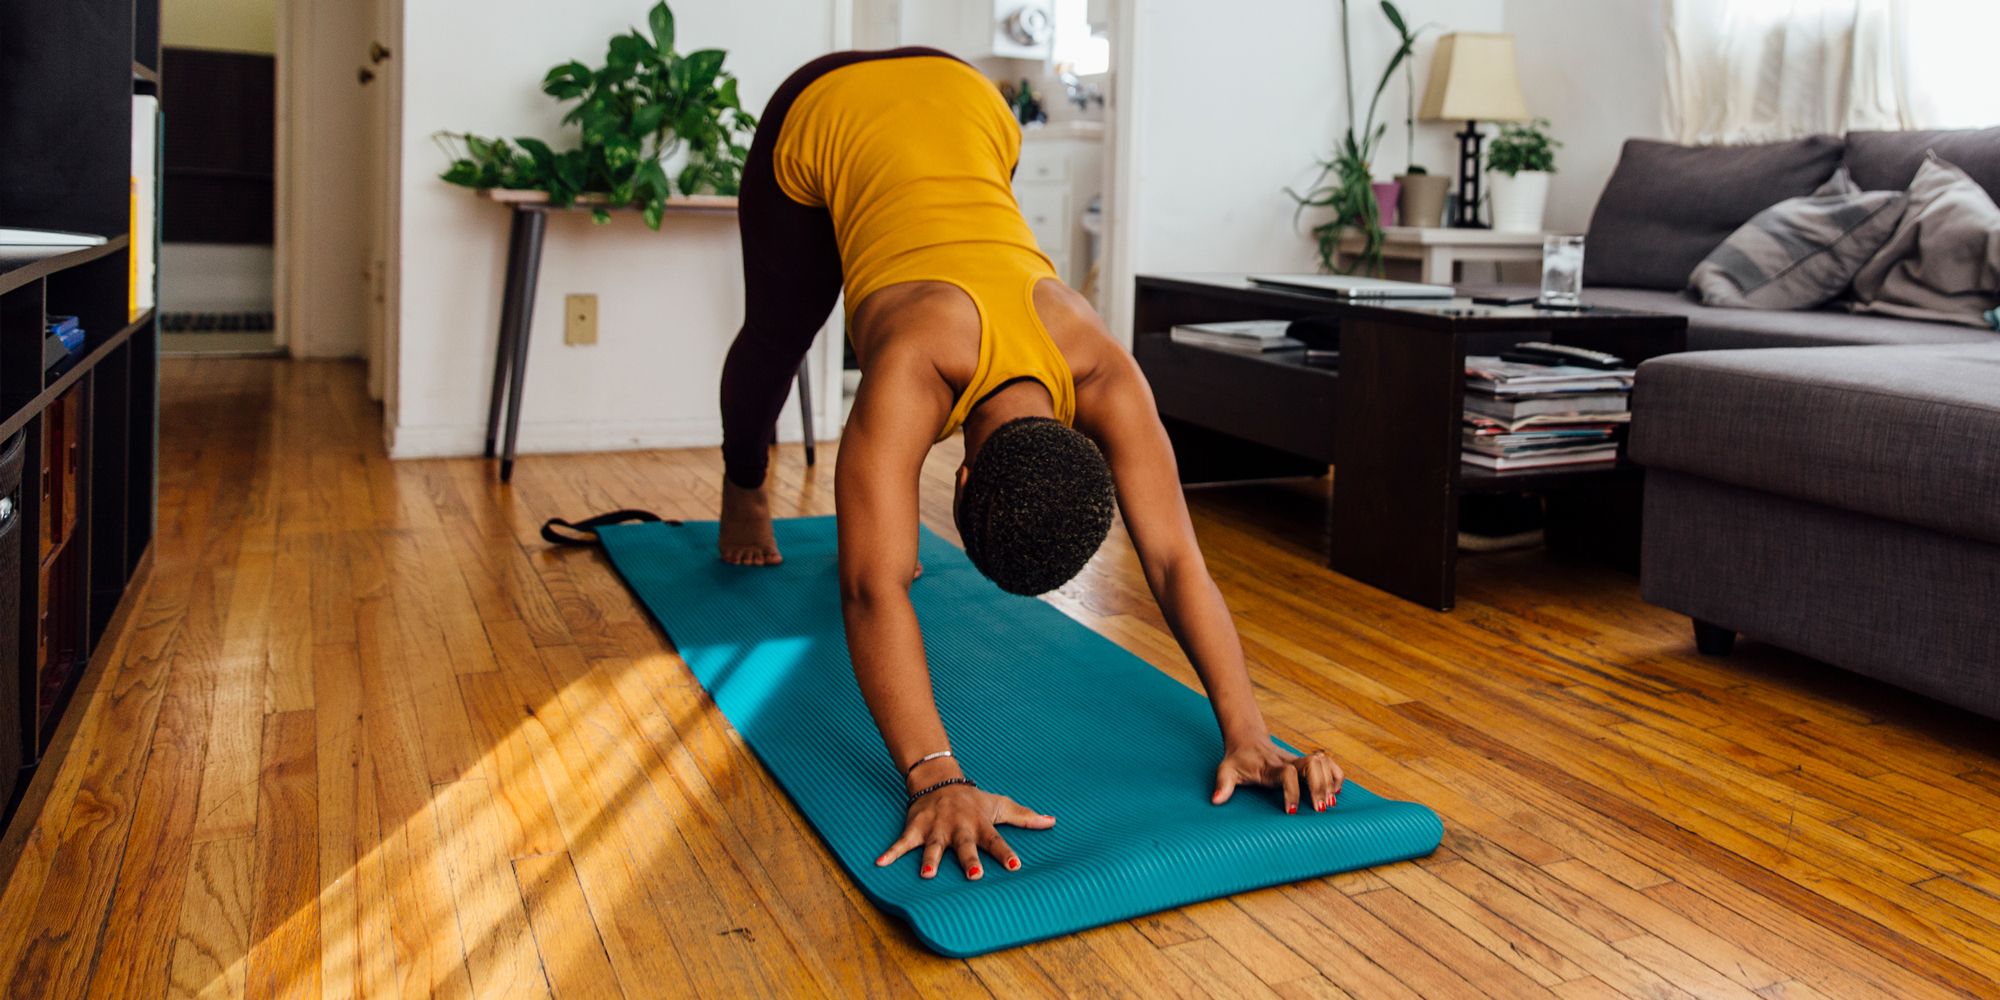 Yoga Knee Pad Non-slip Moisture-resistant Yoga Mat For Plank Pilates Exercise